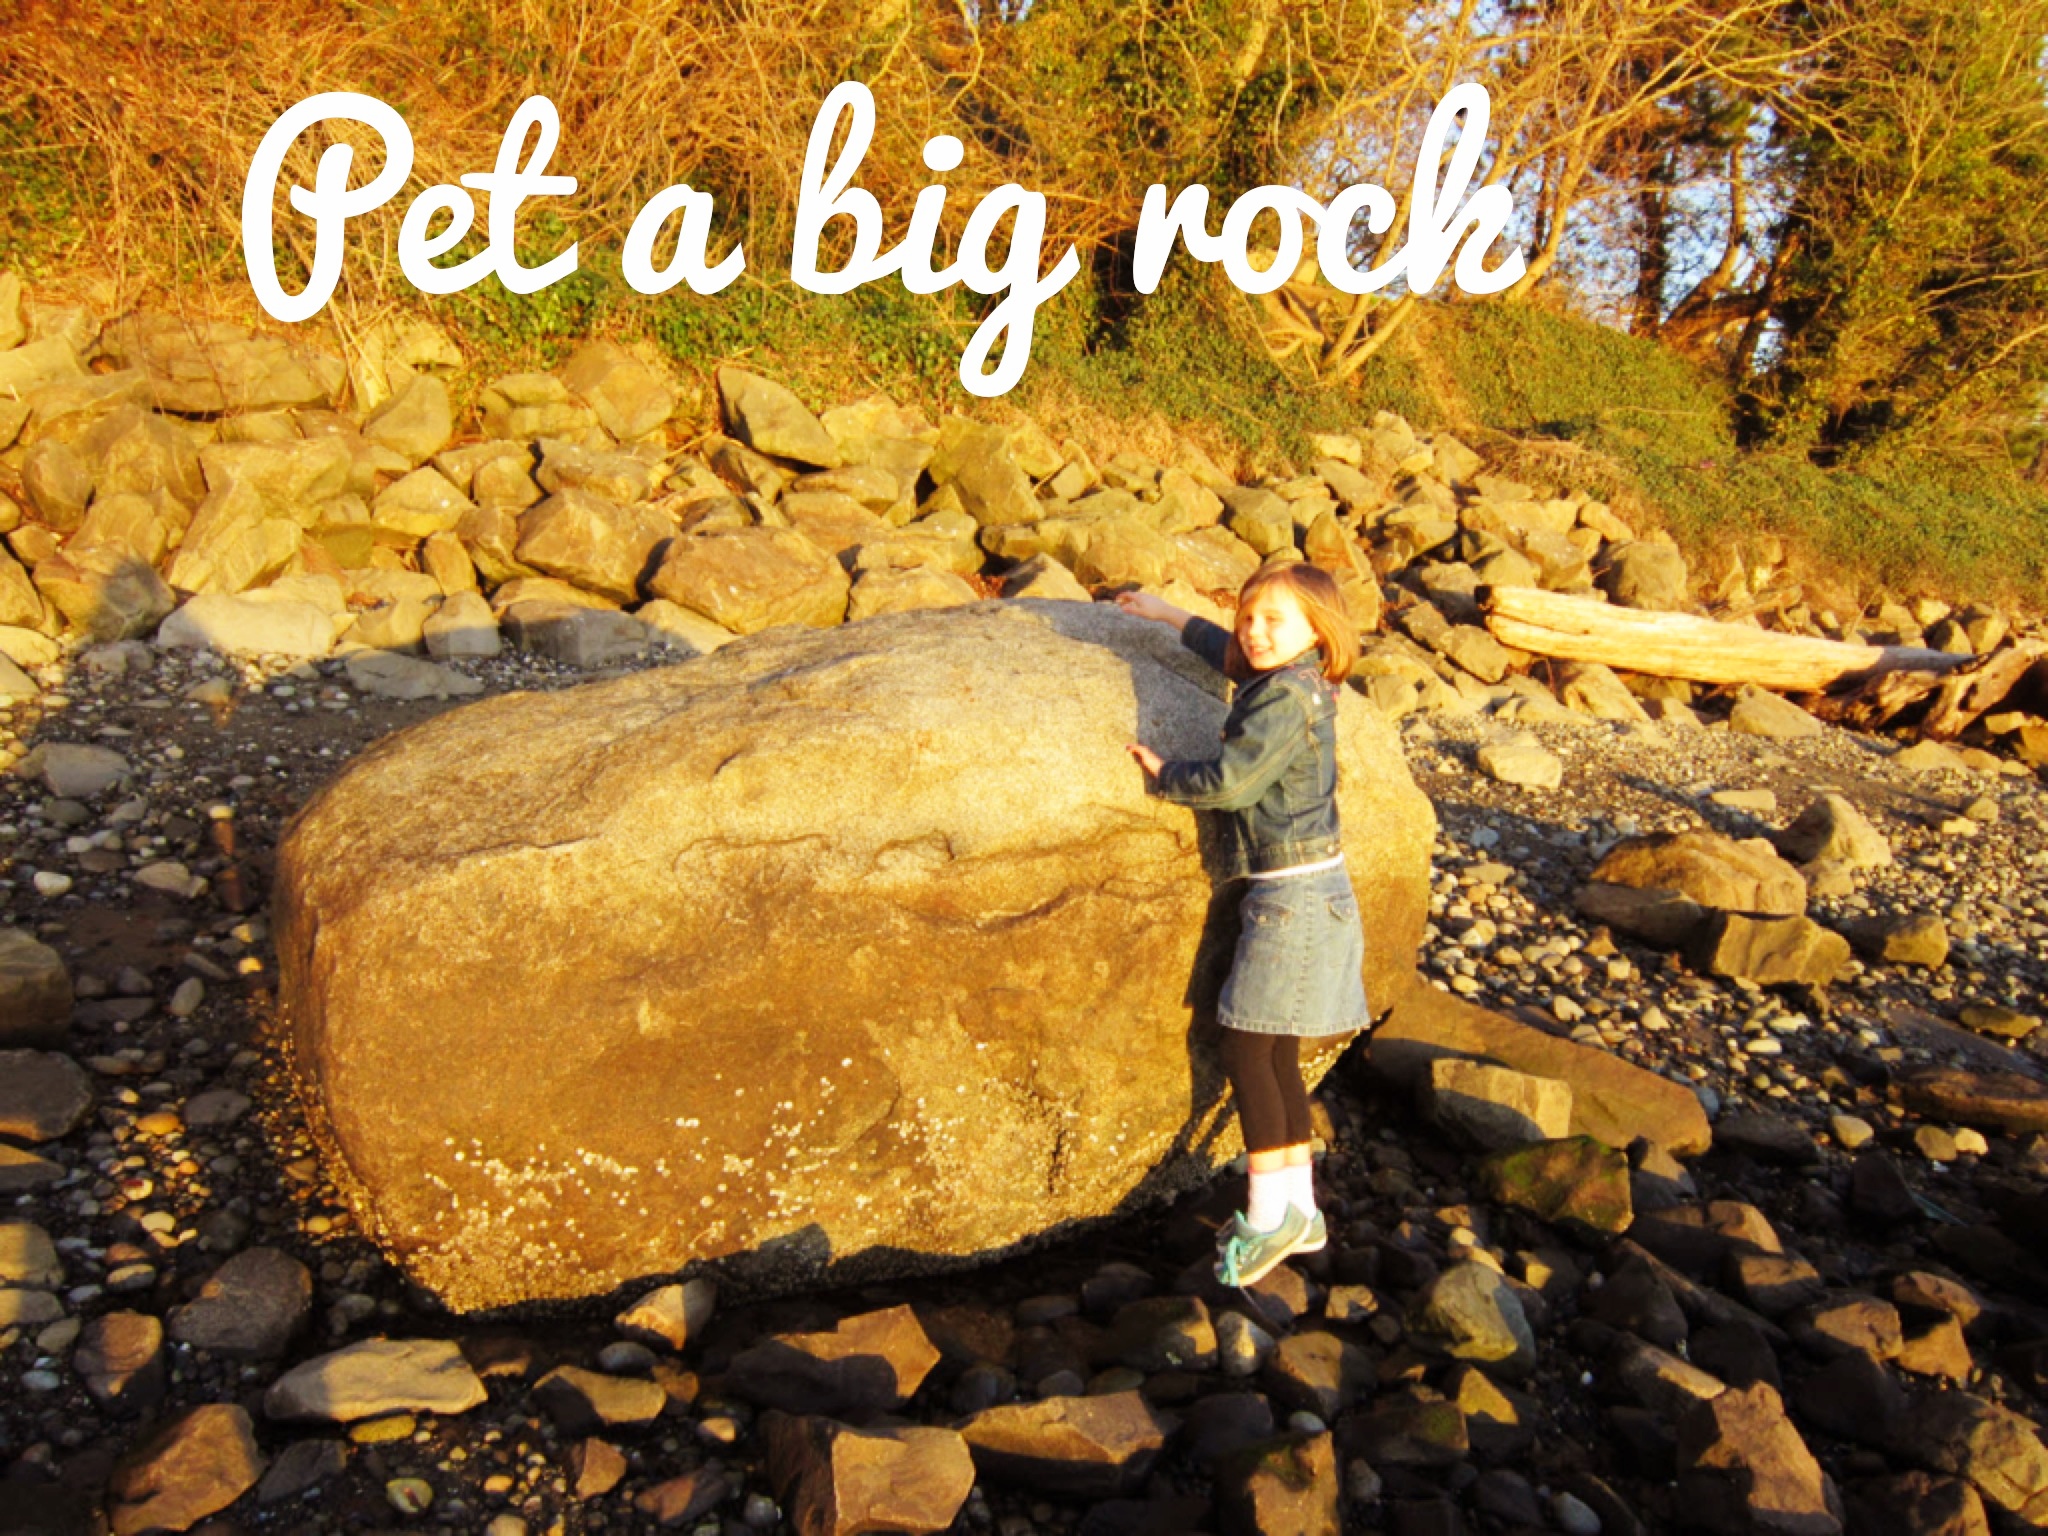 Pet a big rock